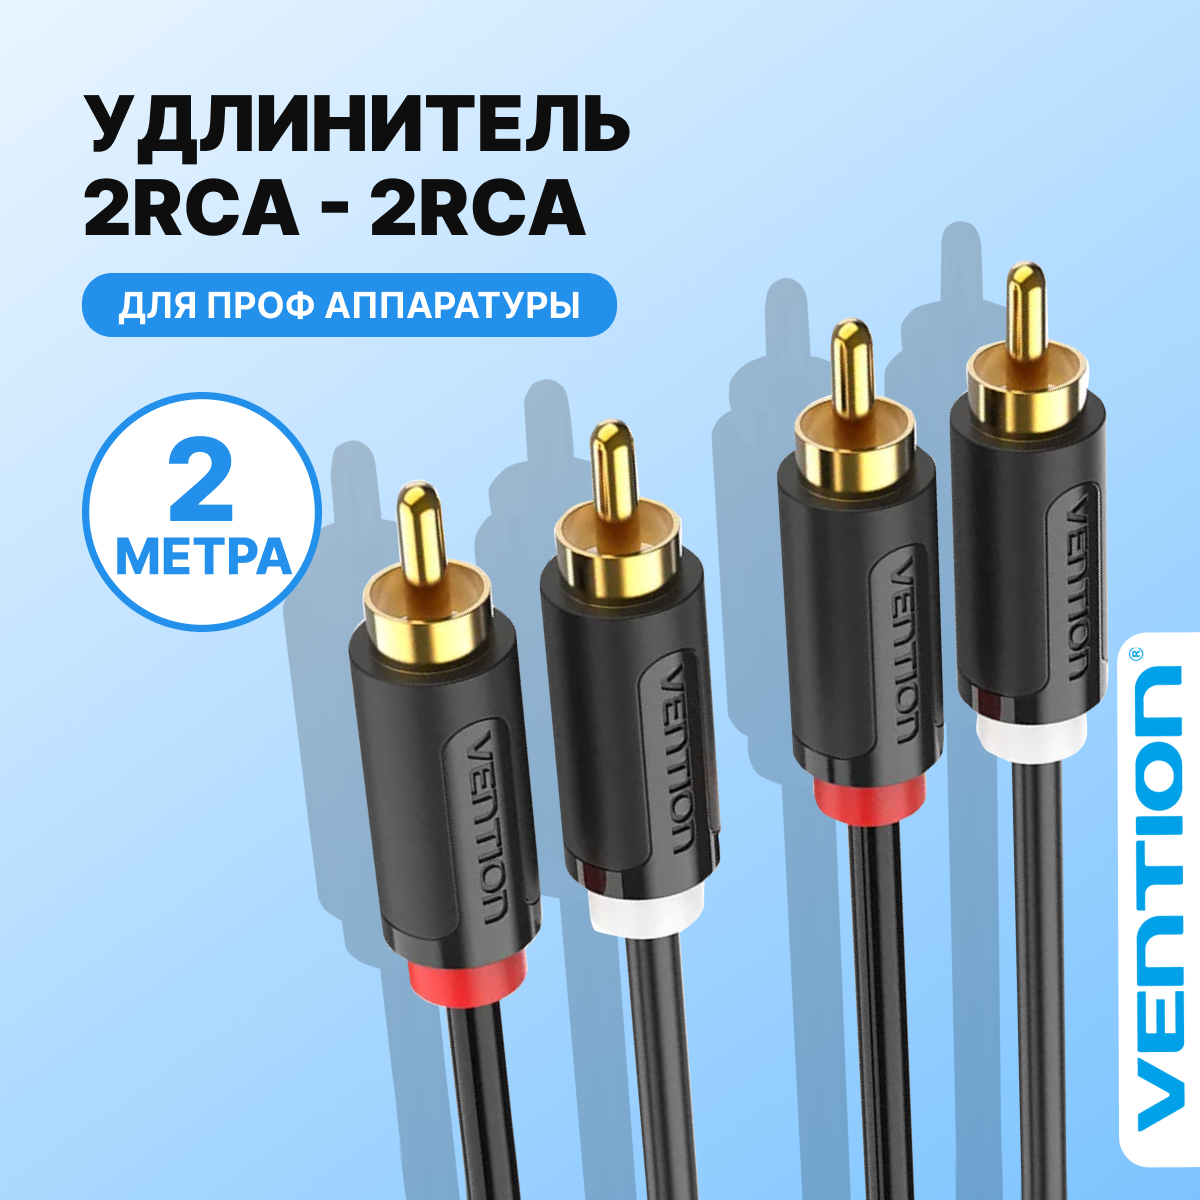 Аудио кабель тип разъема RCA M (папа) х2 /RCA M (папа) х2 длина 2 метра Vention шнур тюльпан для подключения гарнитуры и акустических систем к телевизору, арт. BCMBH